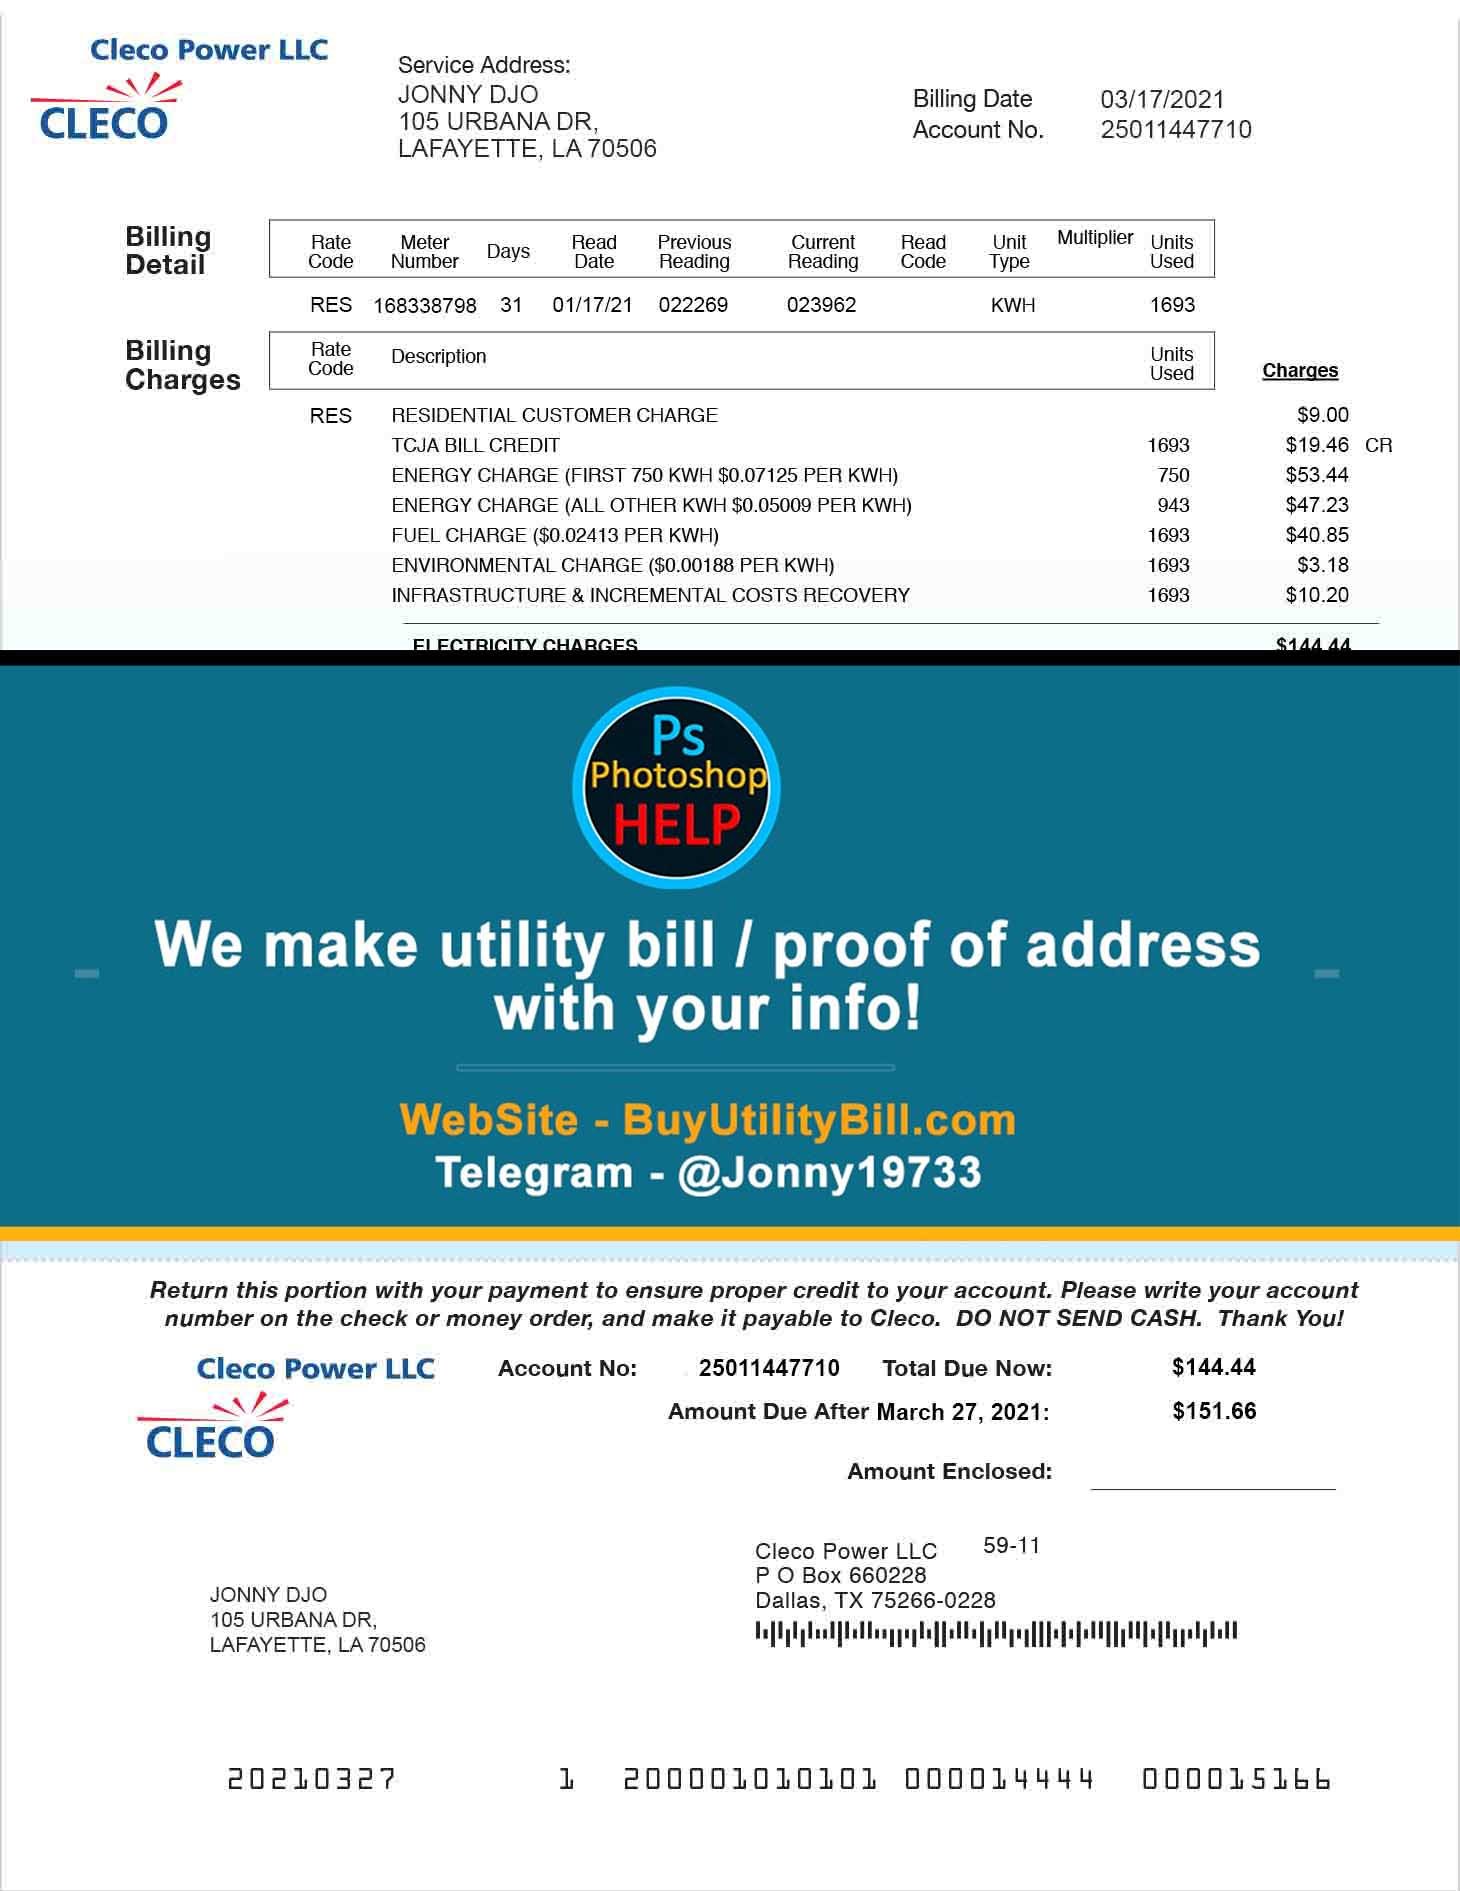 Louisiana Cleco Power Fake Utility bill